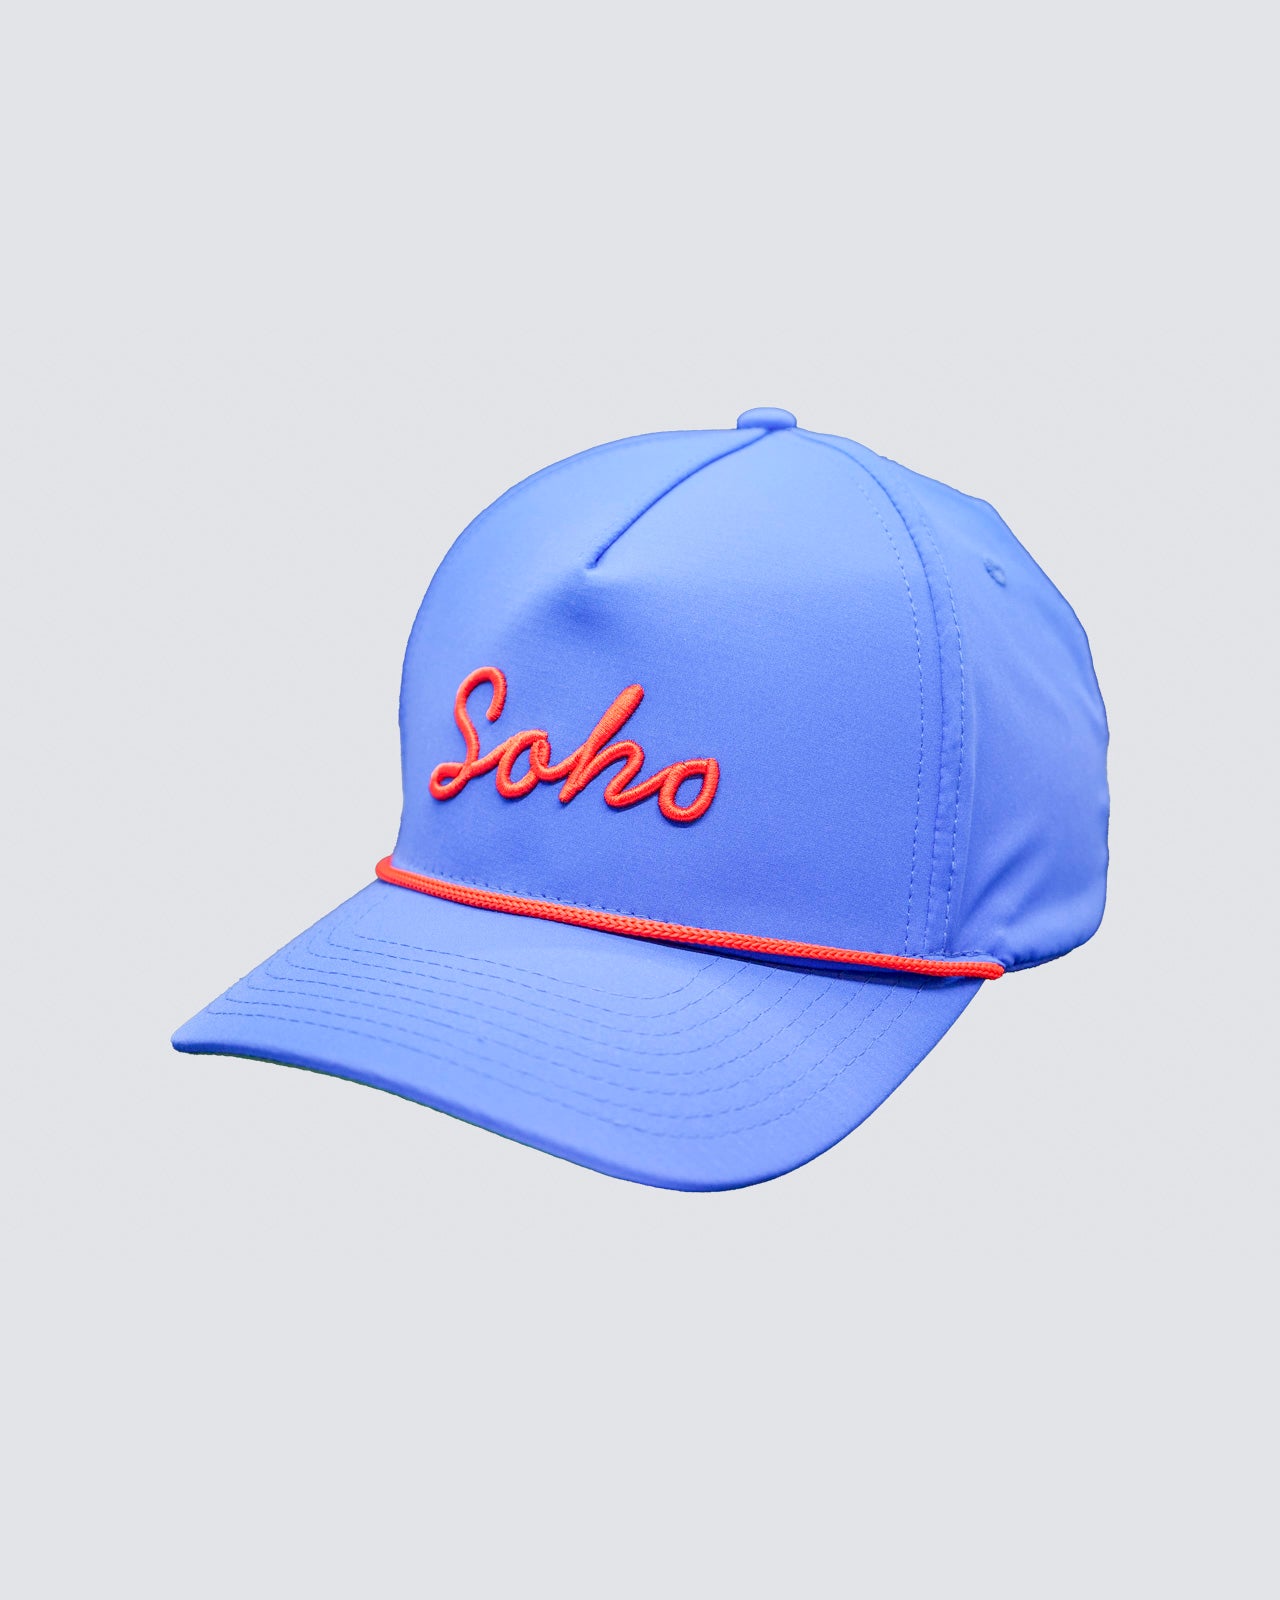 SOHO Hat in Medium Blue